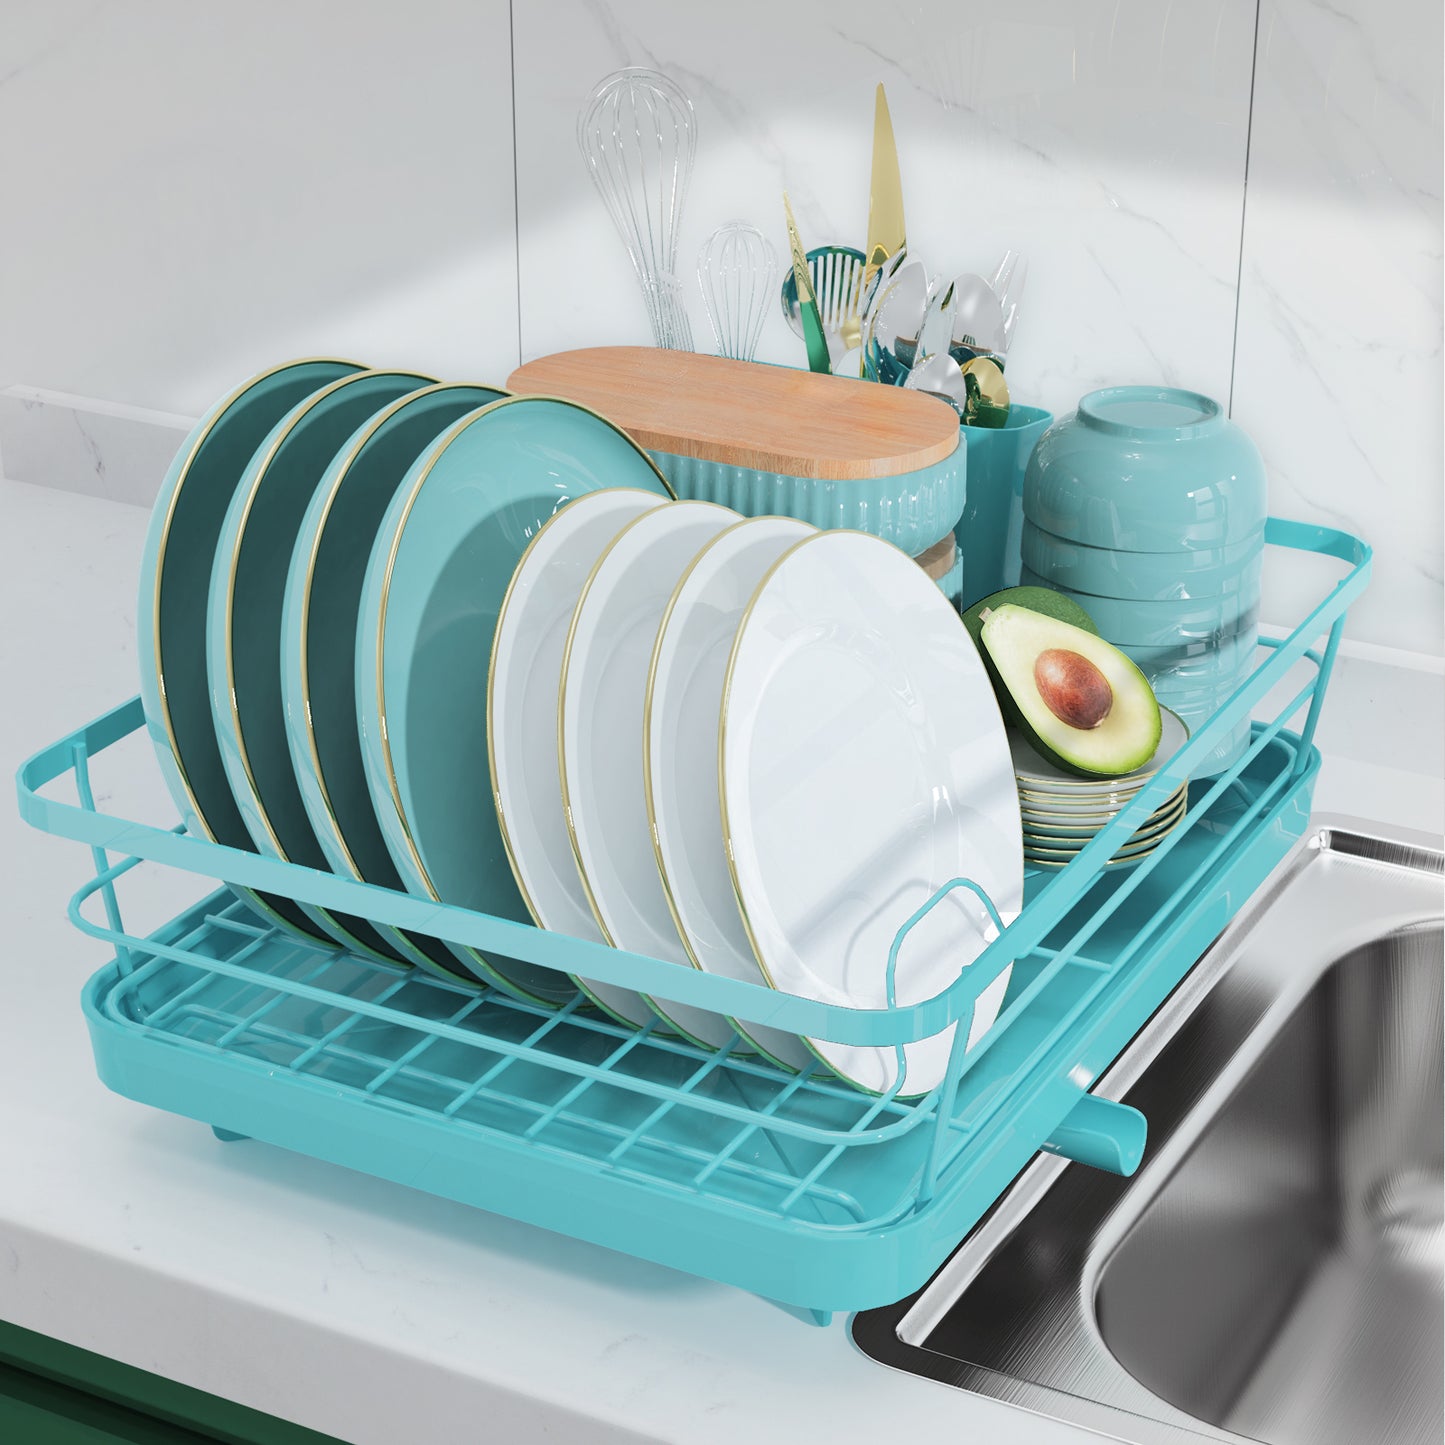 Sakugi Sink Drying Rack Expandable - Stainless Steel Dish Drying Rack